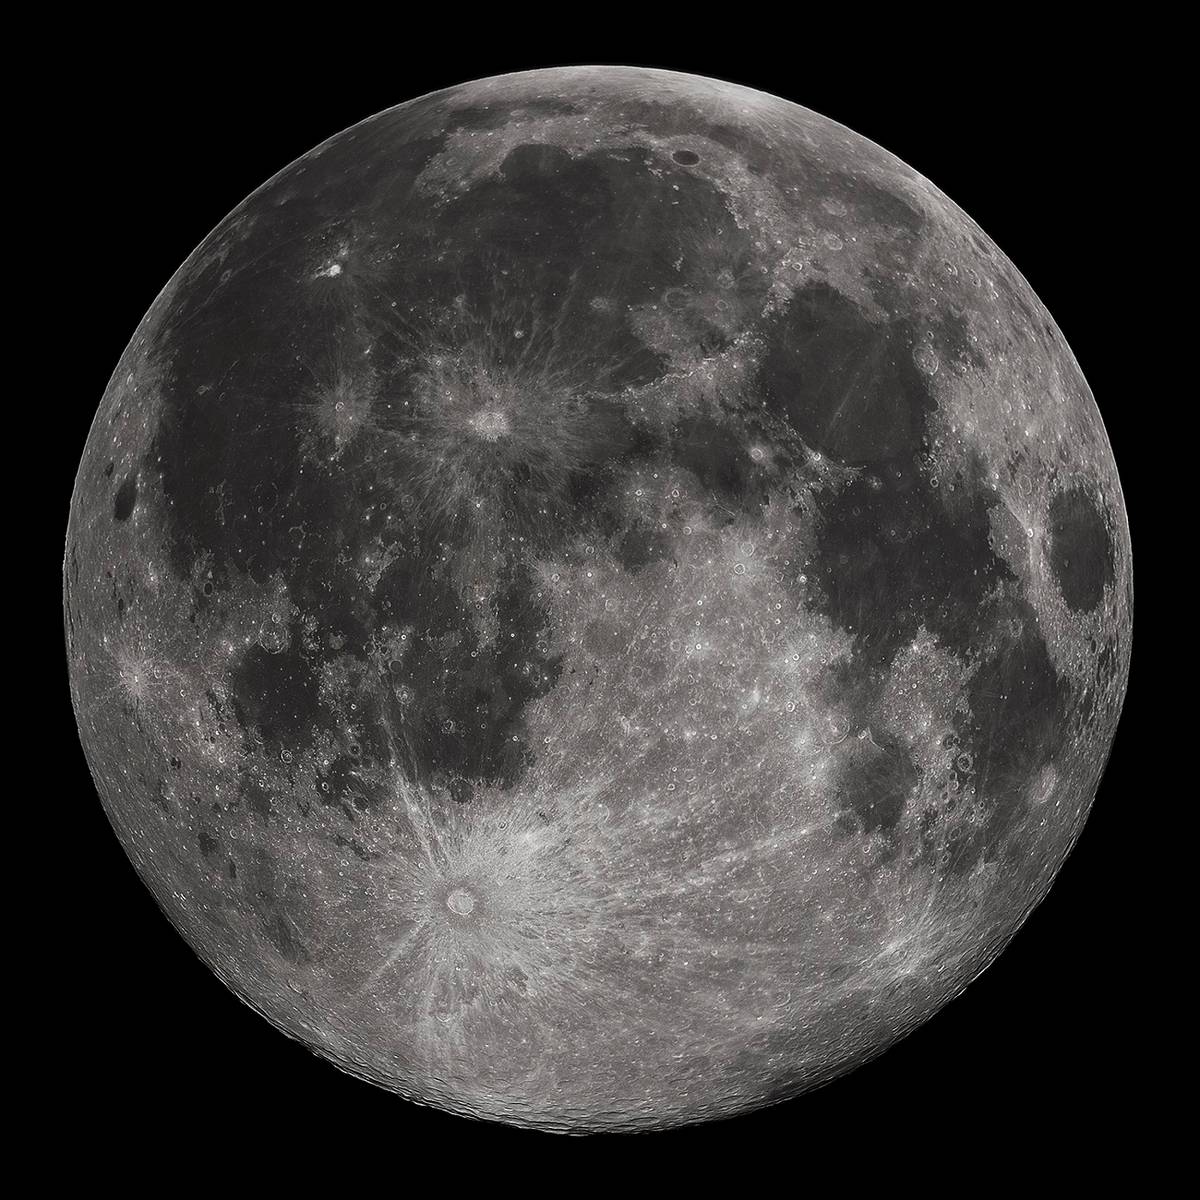 Chiński lądownik księżycowy Chang’E-5 jako pierwszy potwierdził bezpośrednio występowanie wody na Księżycu